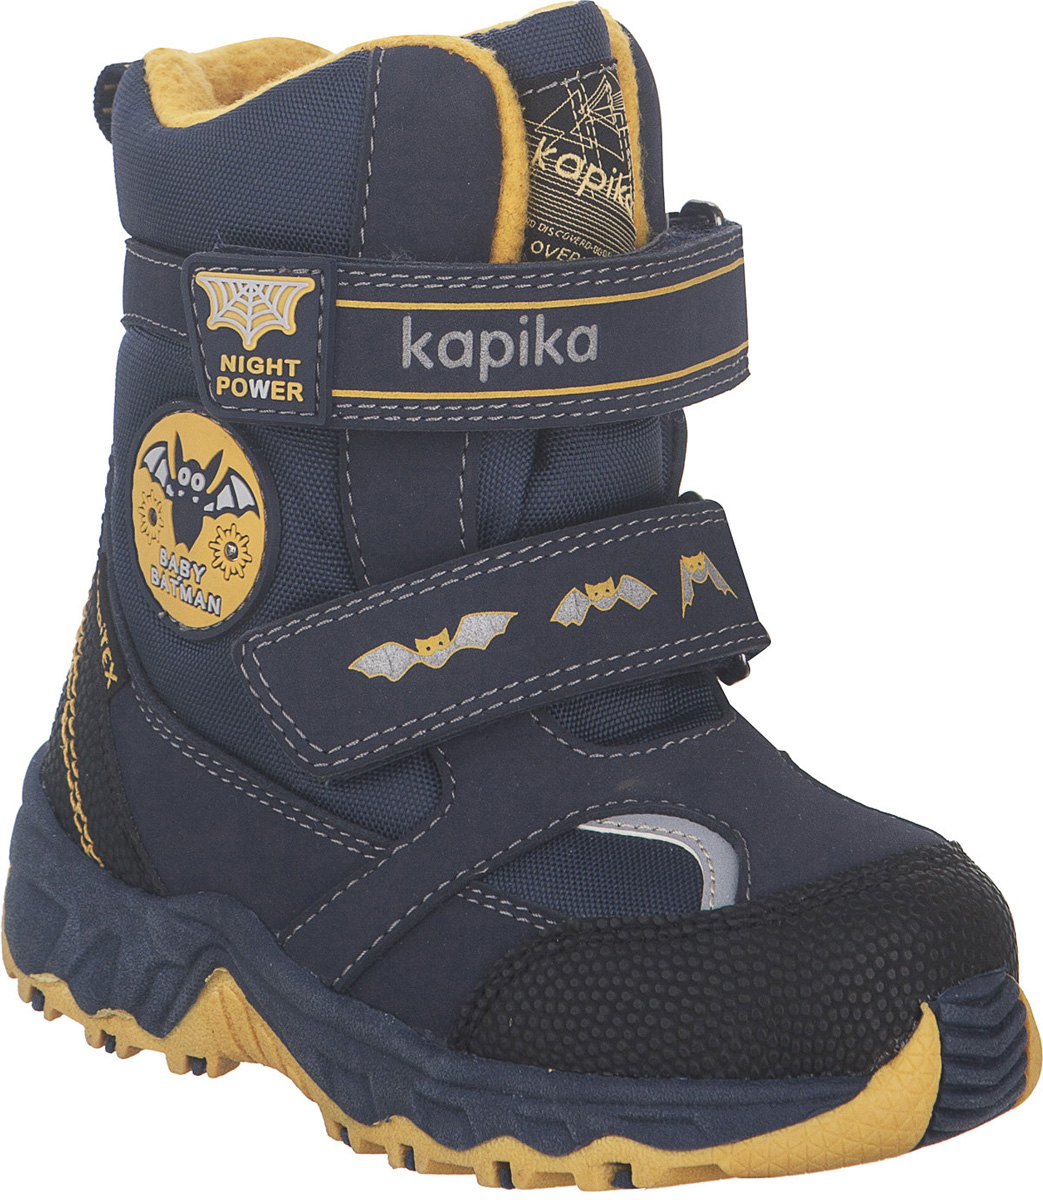 Ботинки для мальчика Kapika KapiTEX, цвет: темно-синий, желтый. 41205-2. Размер 24